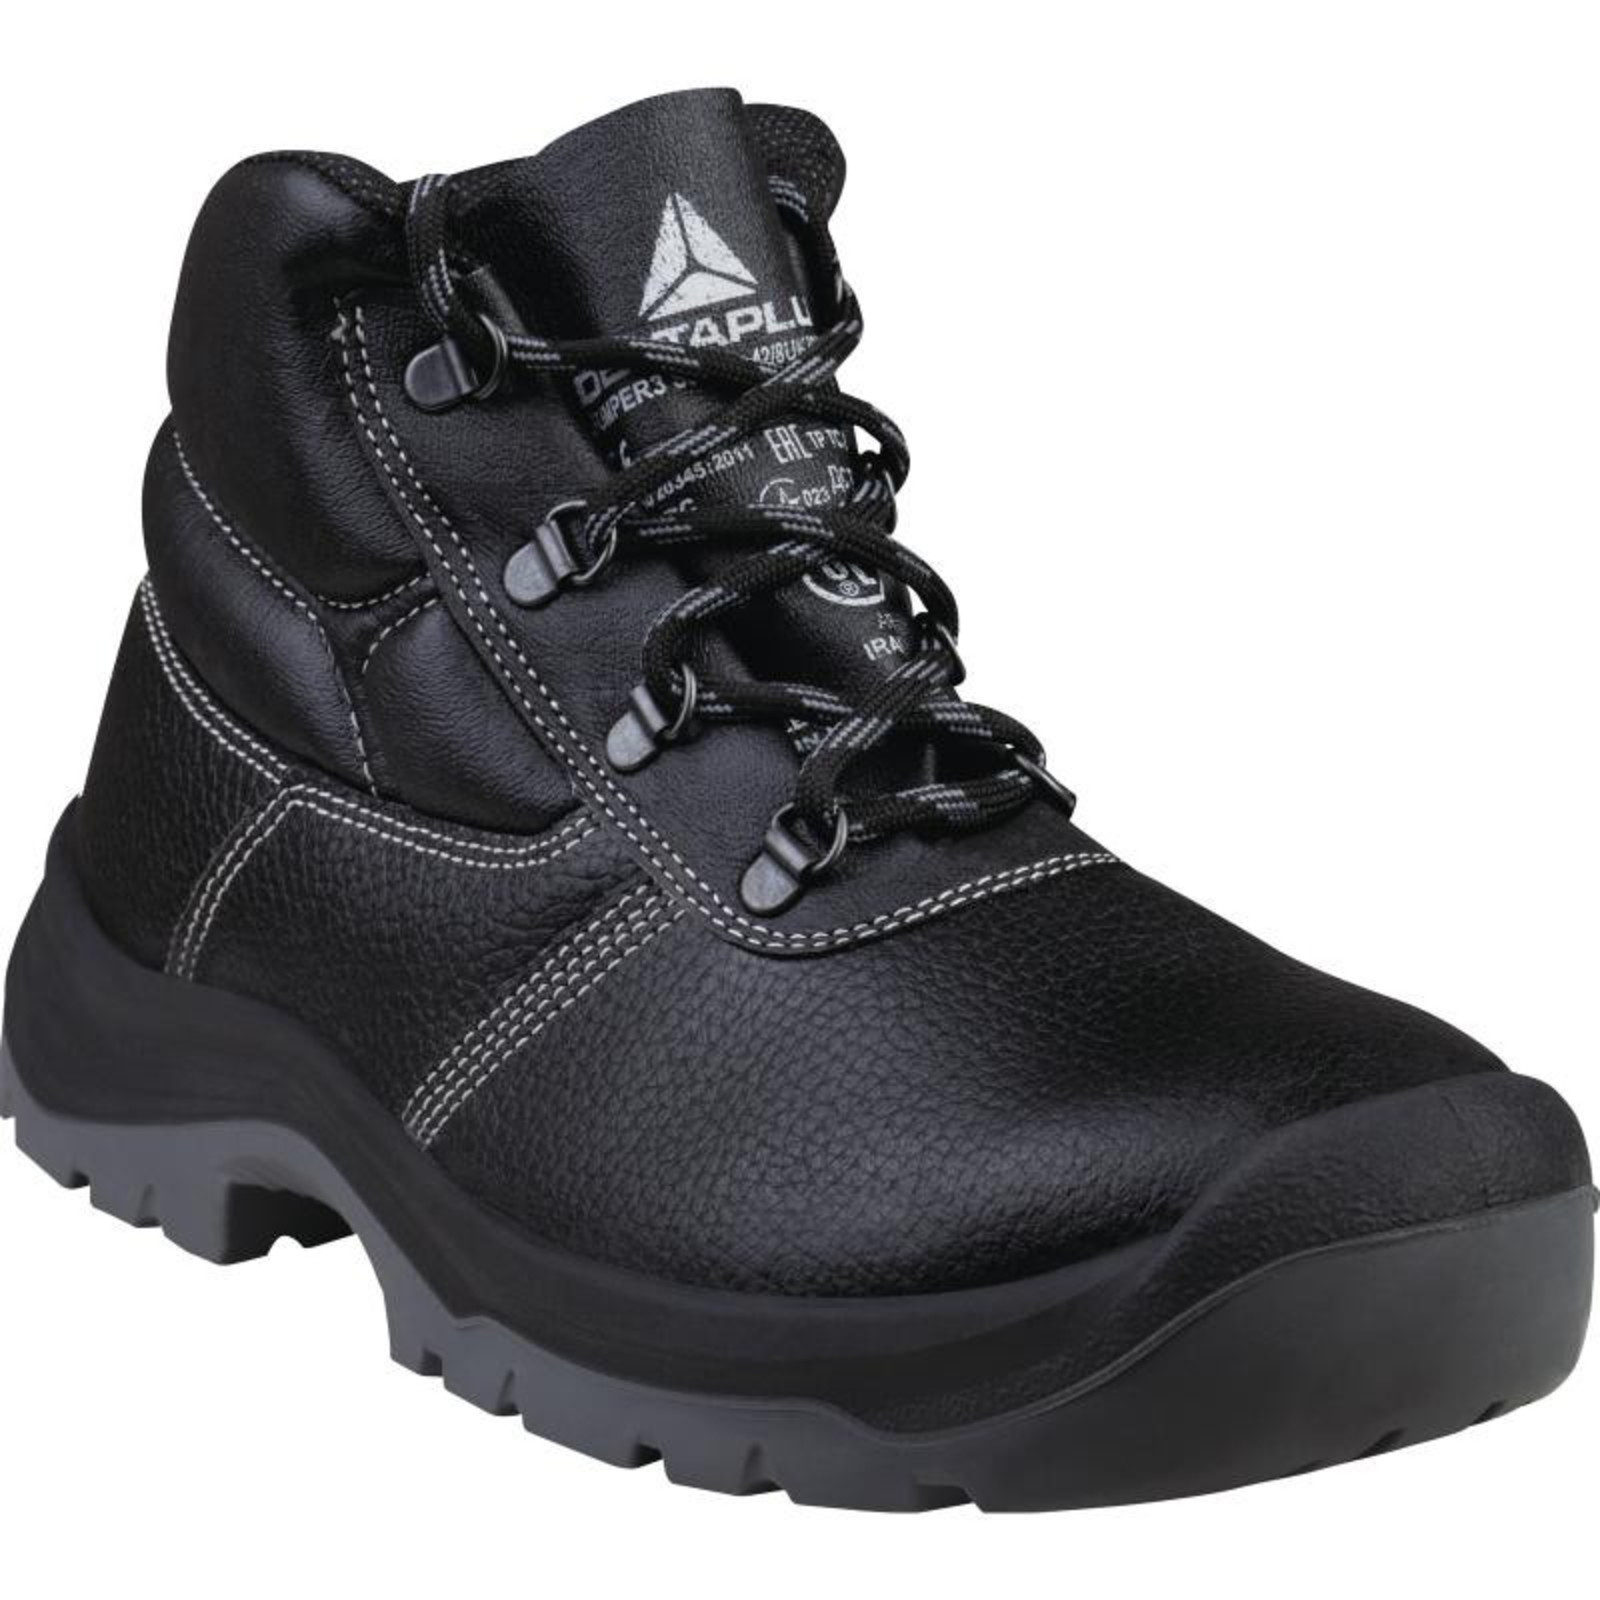 Členková bezpečnostná obuv Delta Plus Jumper3 S3 SRC - veľkosť: 36, farba: čierna